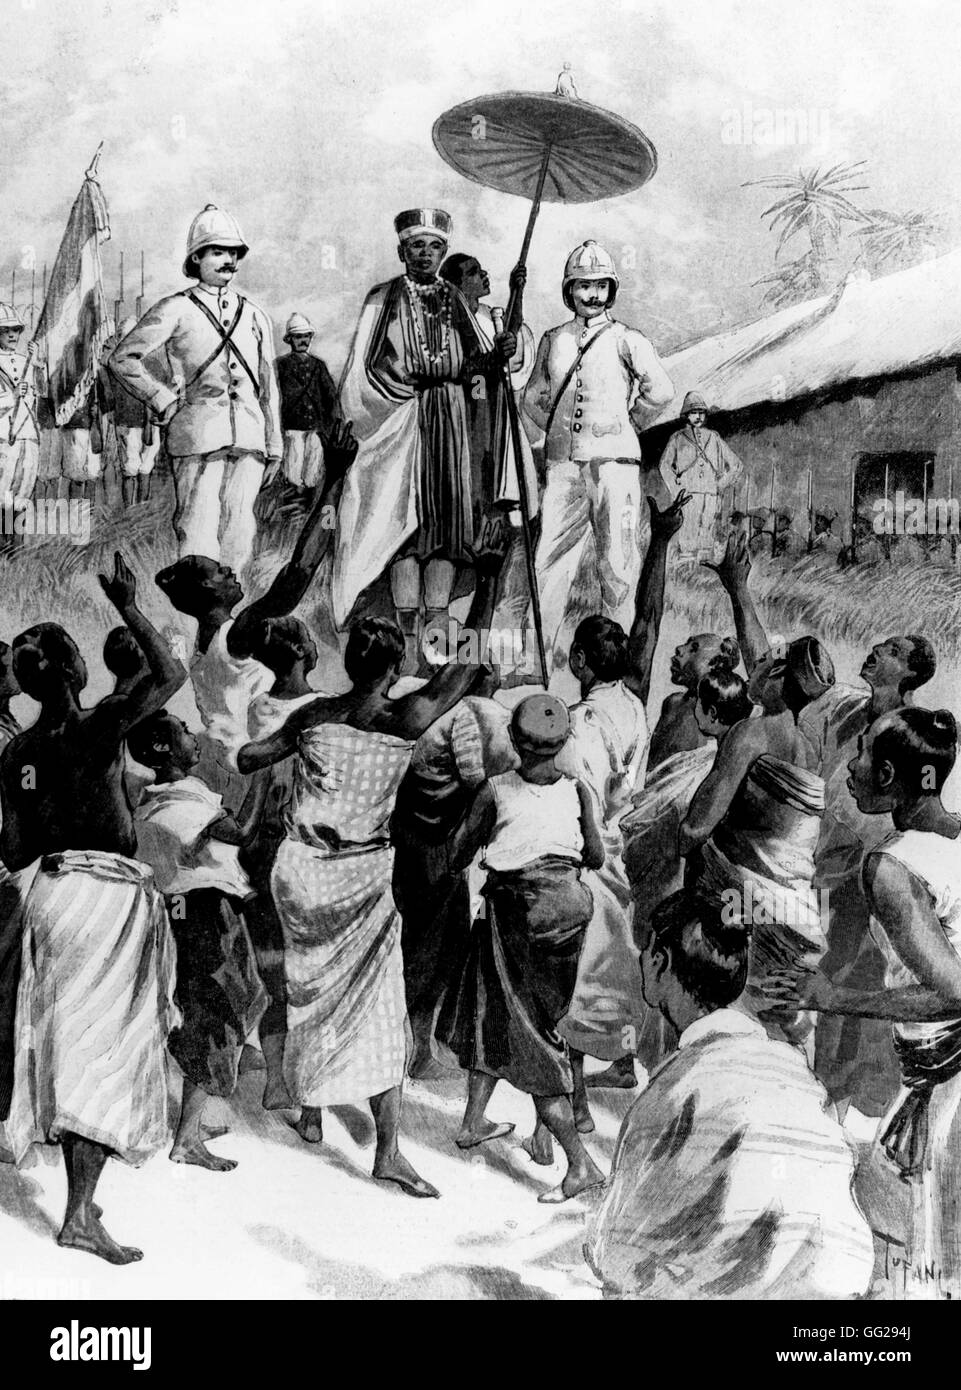 Proklamation durch den neuen König von Dahomey 1894 Frankreich - Kolonisation Stockfoto